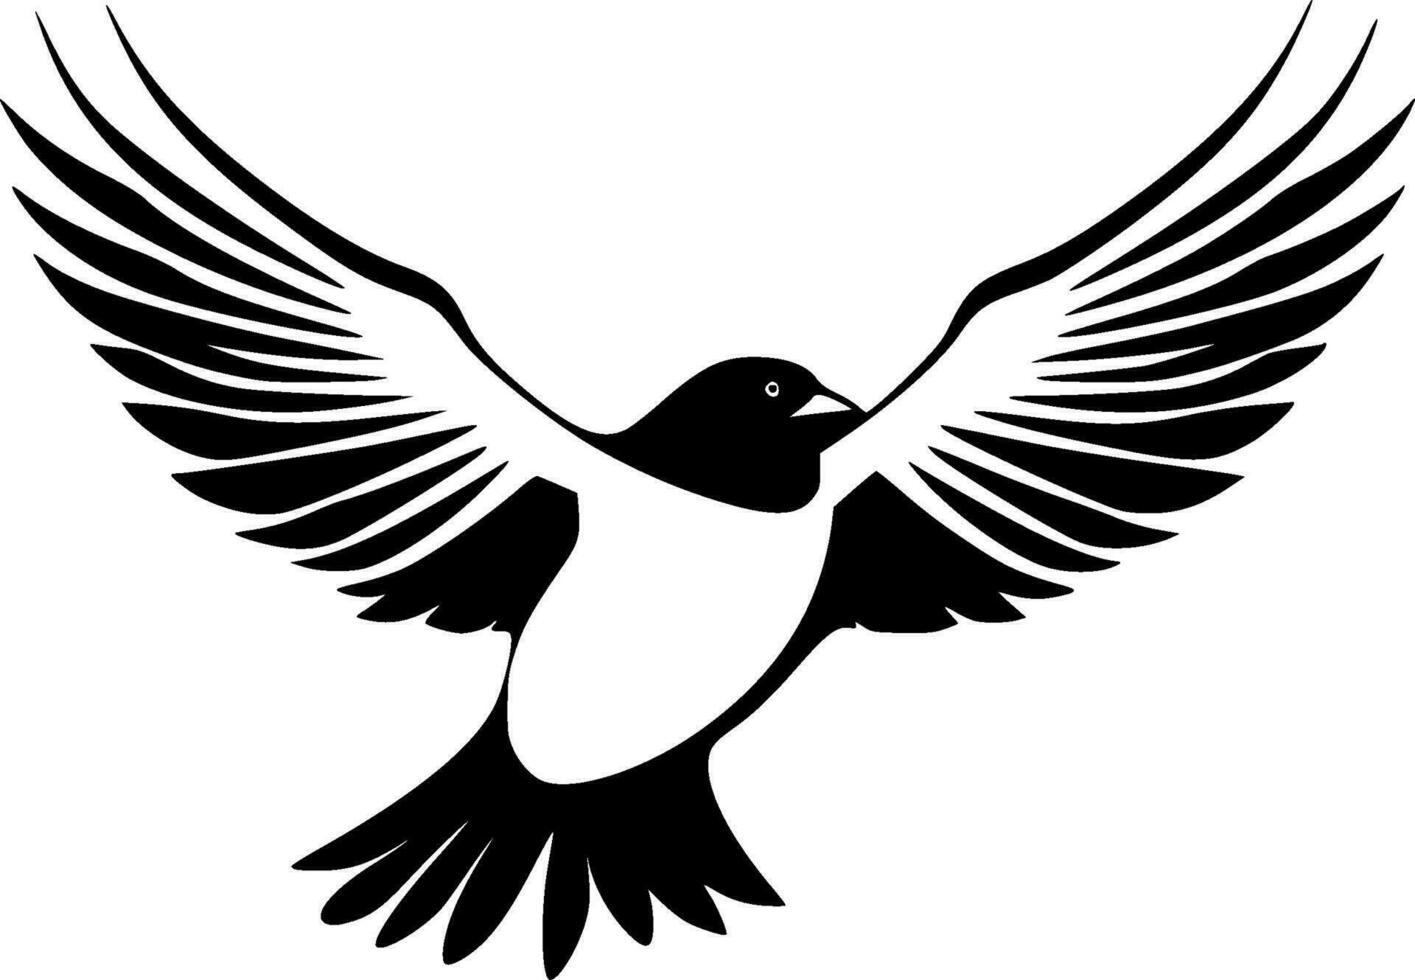 vogels, zwart en wit vector illustratie